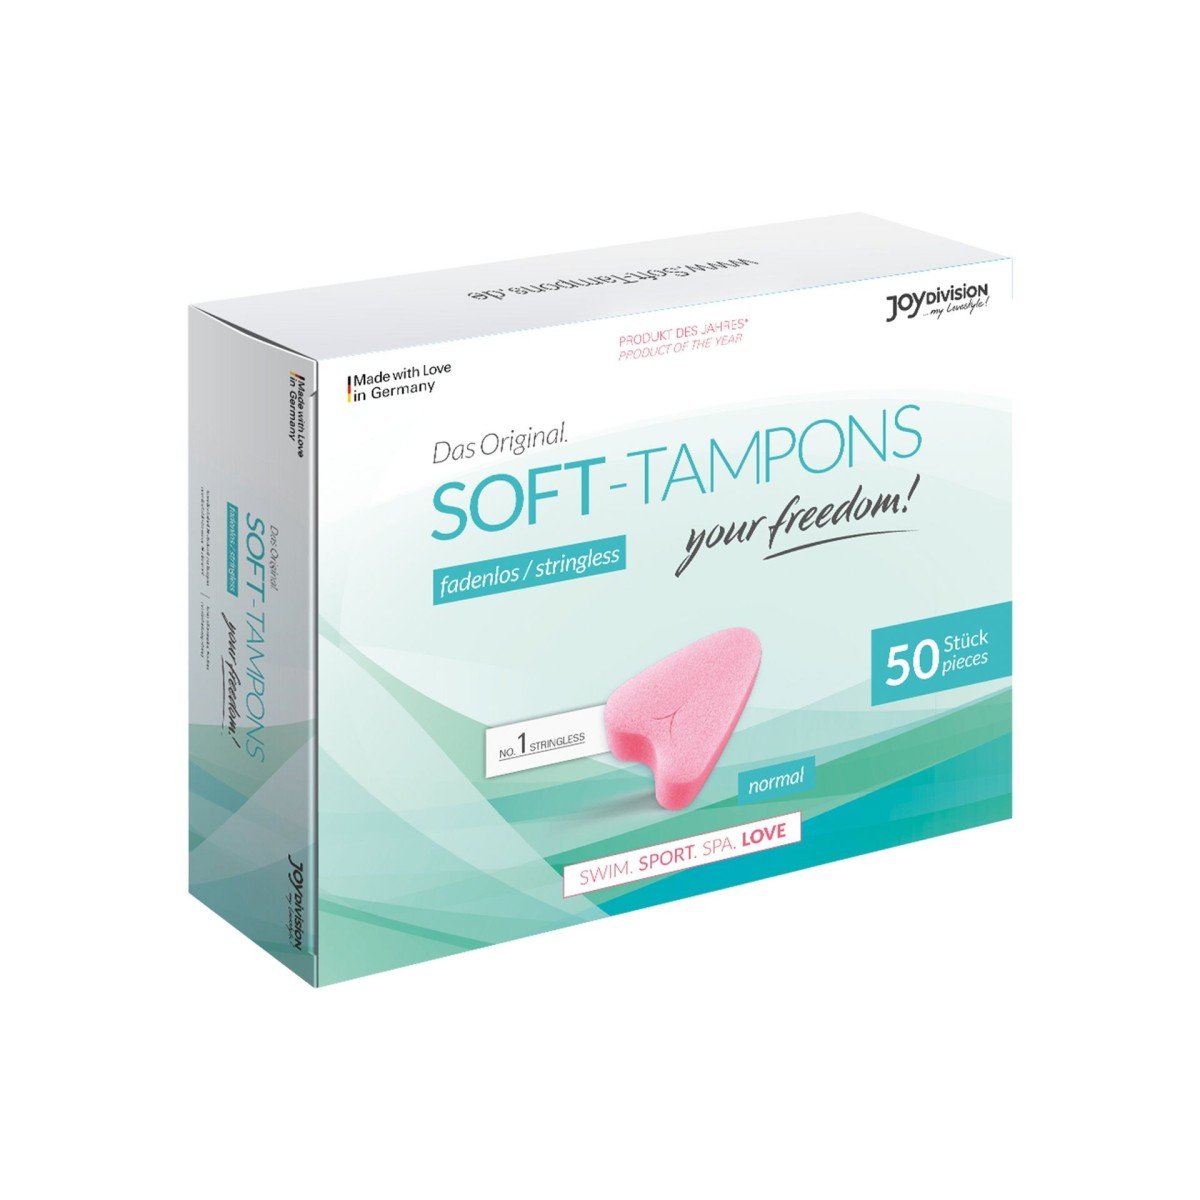 Joydivision Soft-Tampons Normal 50, měkké menstruační tampony